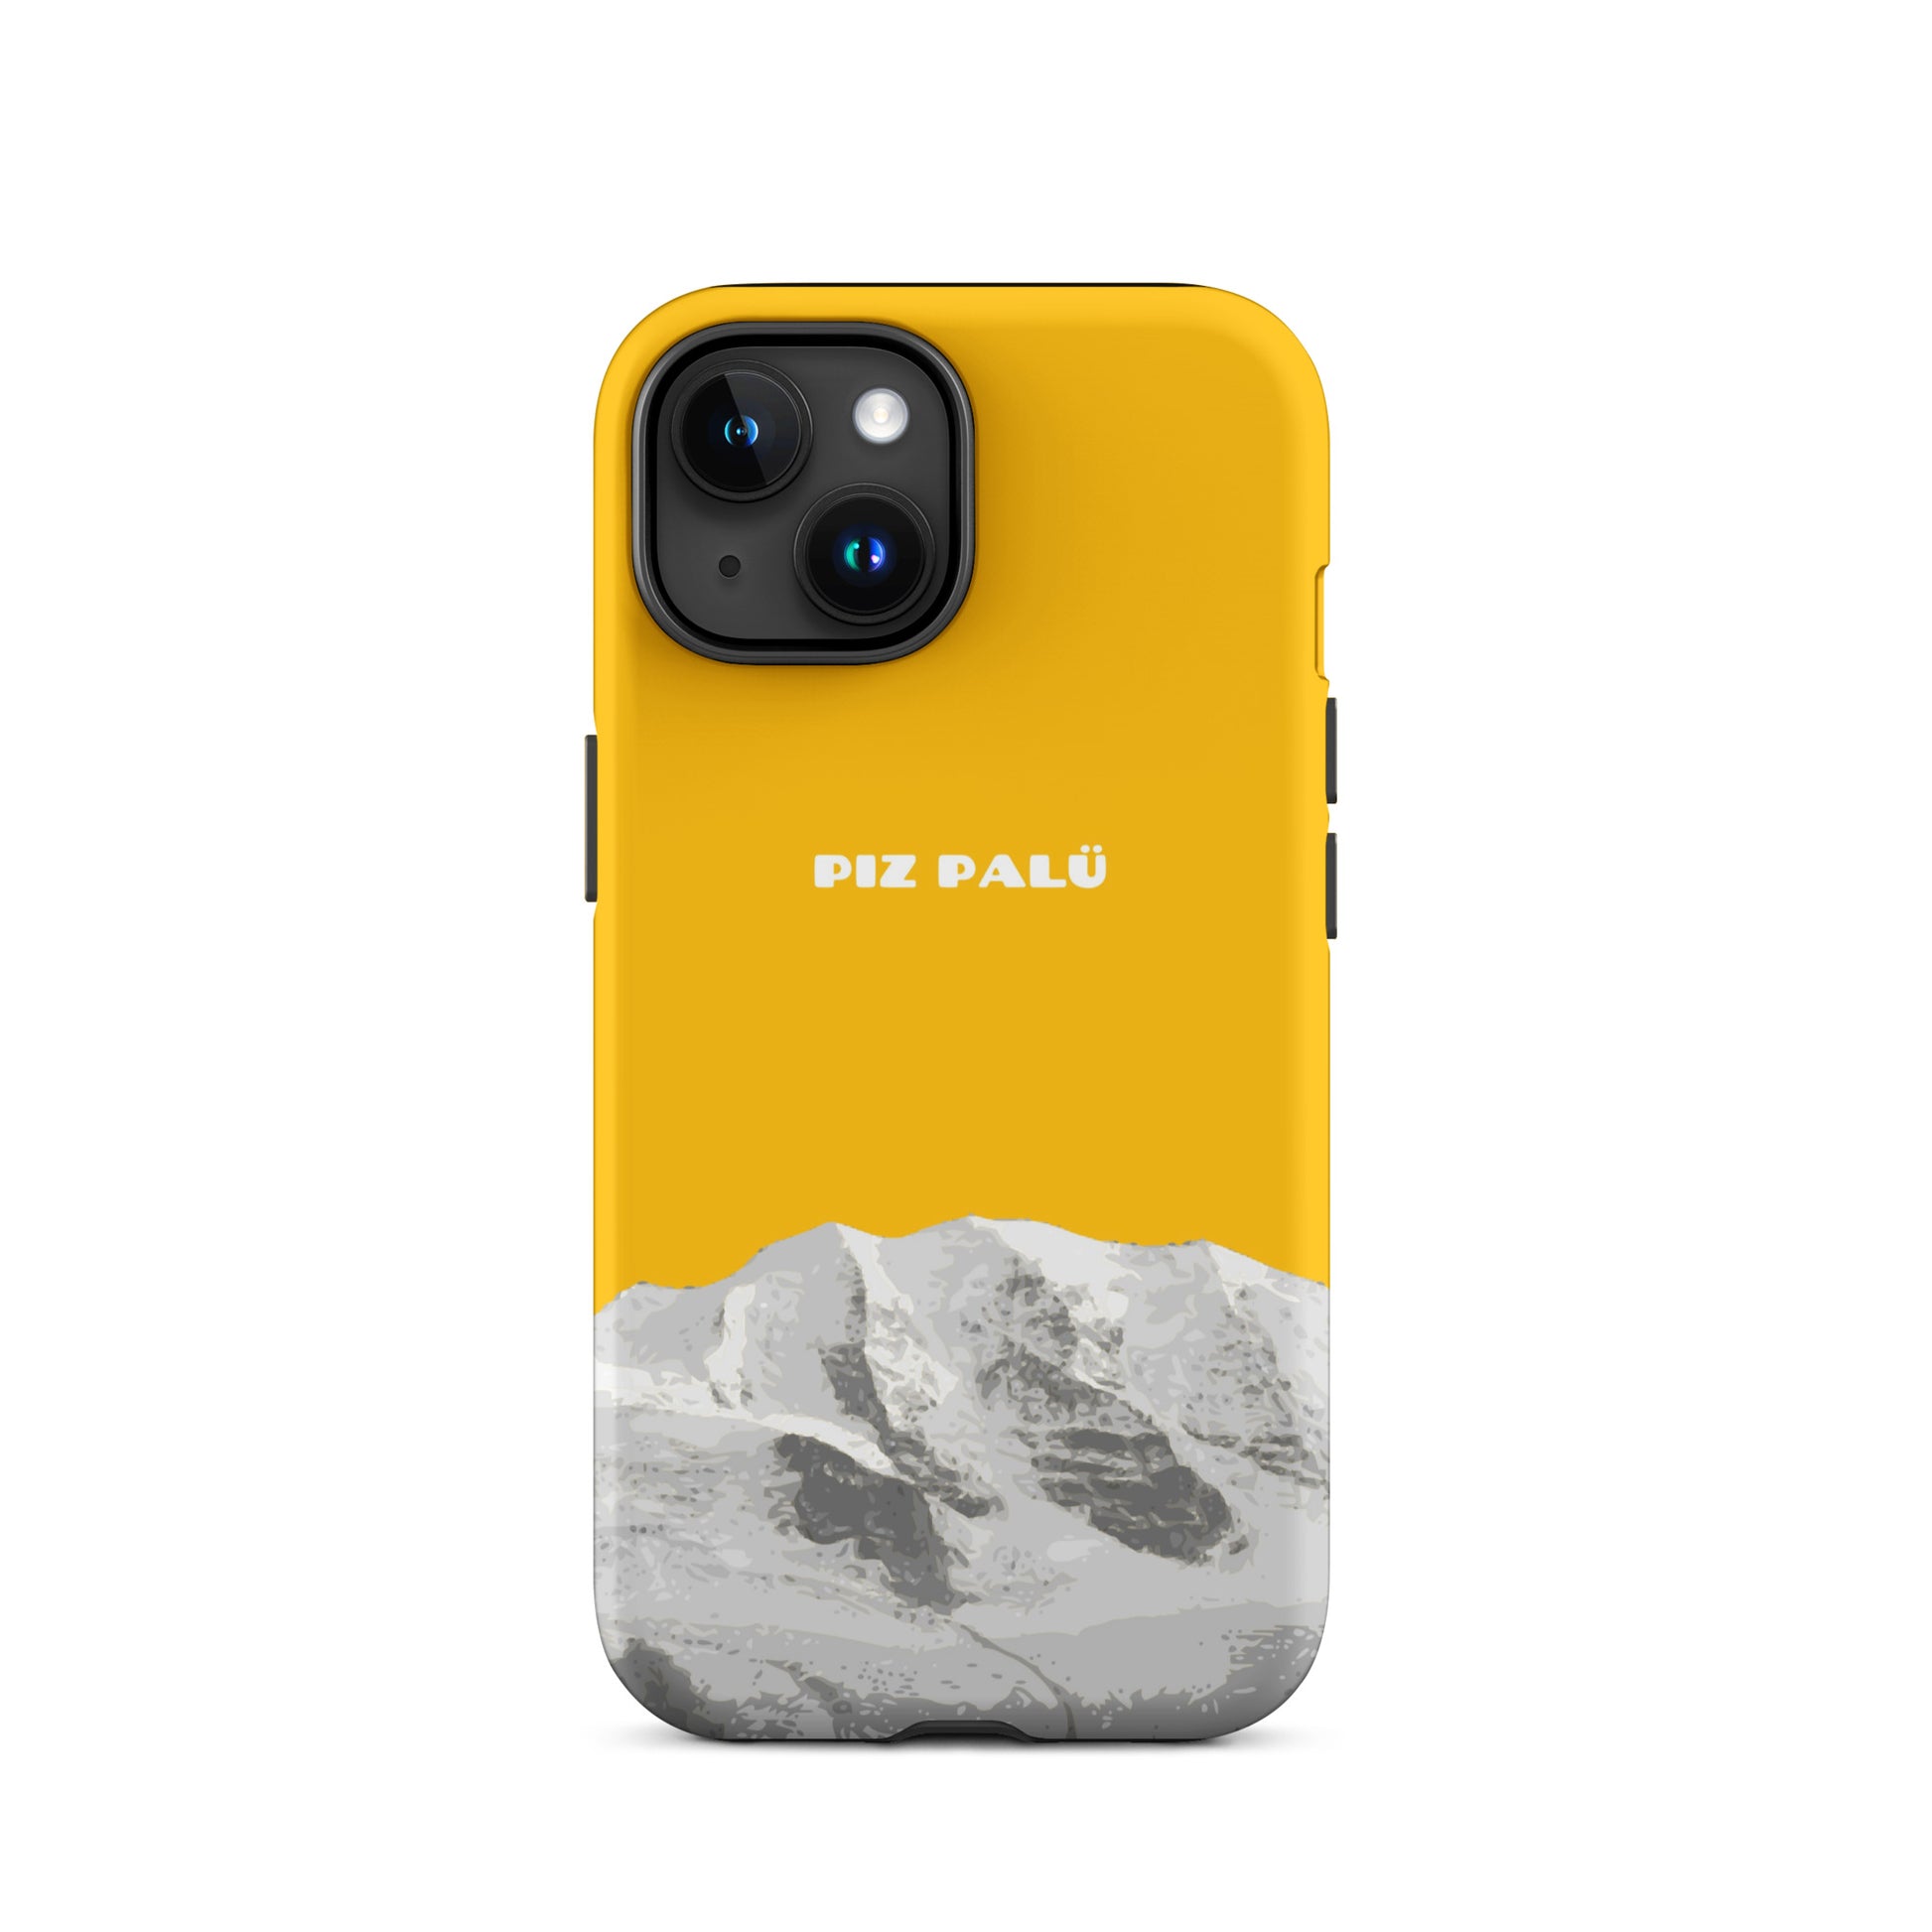 Hülle für das iPhone 15 von Apple in der Farbe Goldgelb, dass den Piz Palü in Graubünden zeigt.